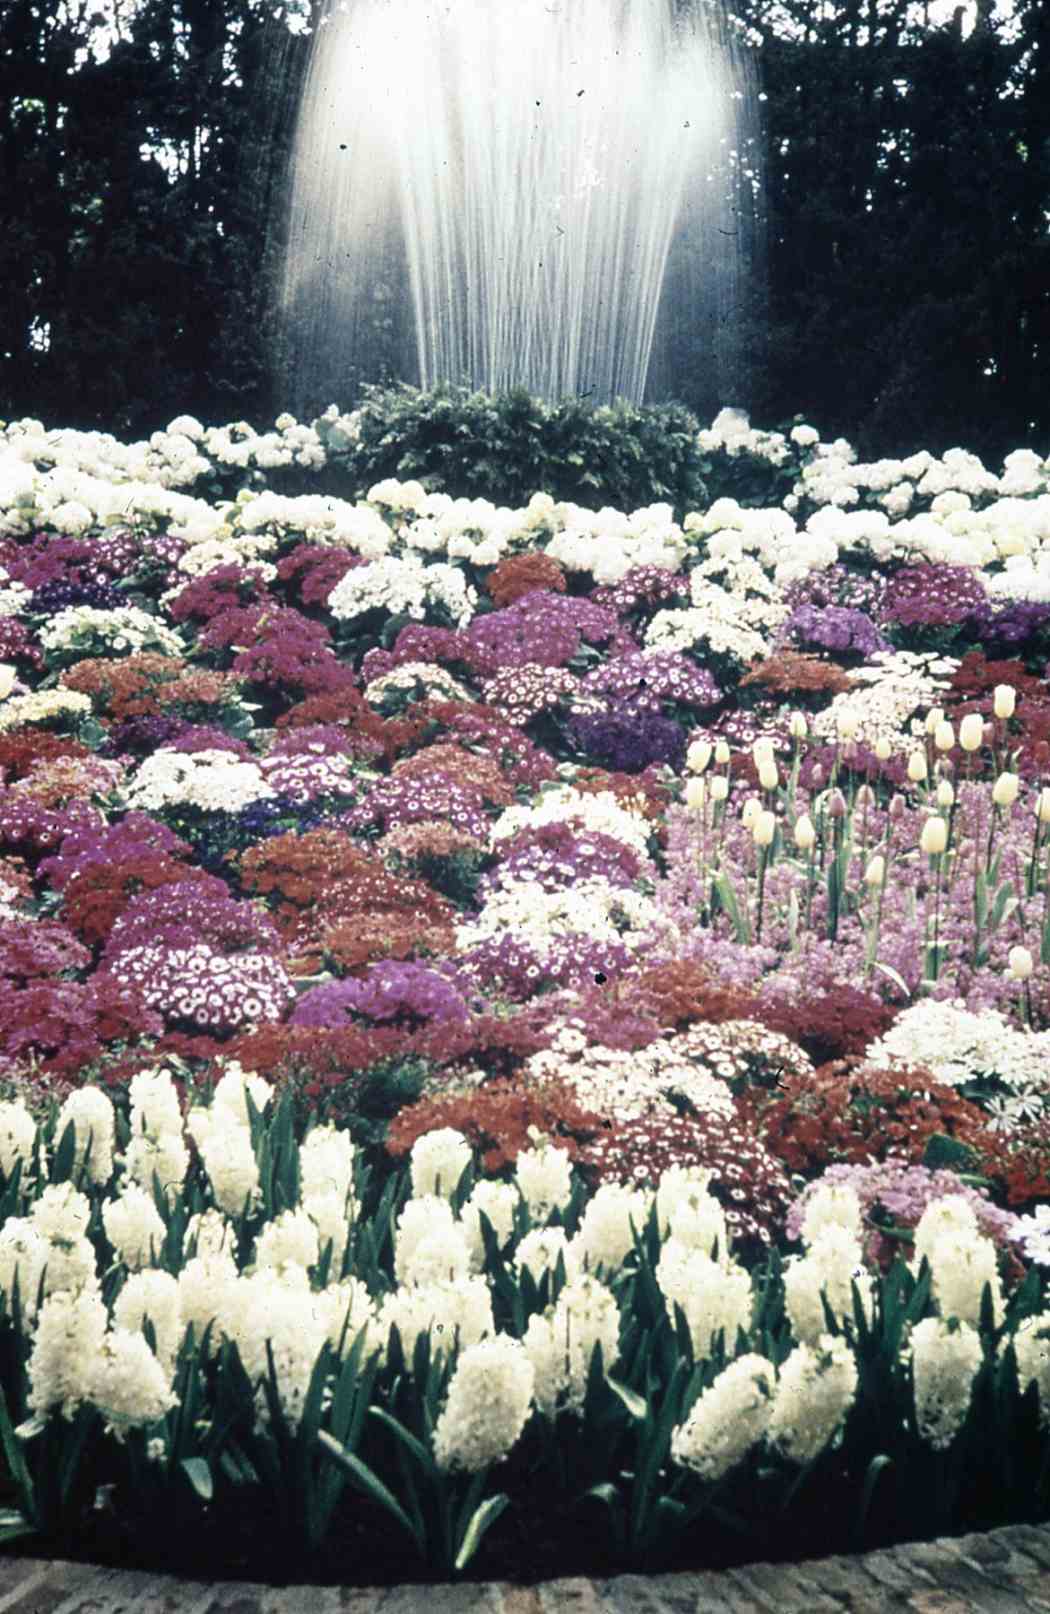 Spring Flower Show 1955: Wearing White for Eastertide